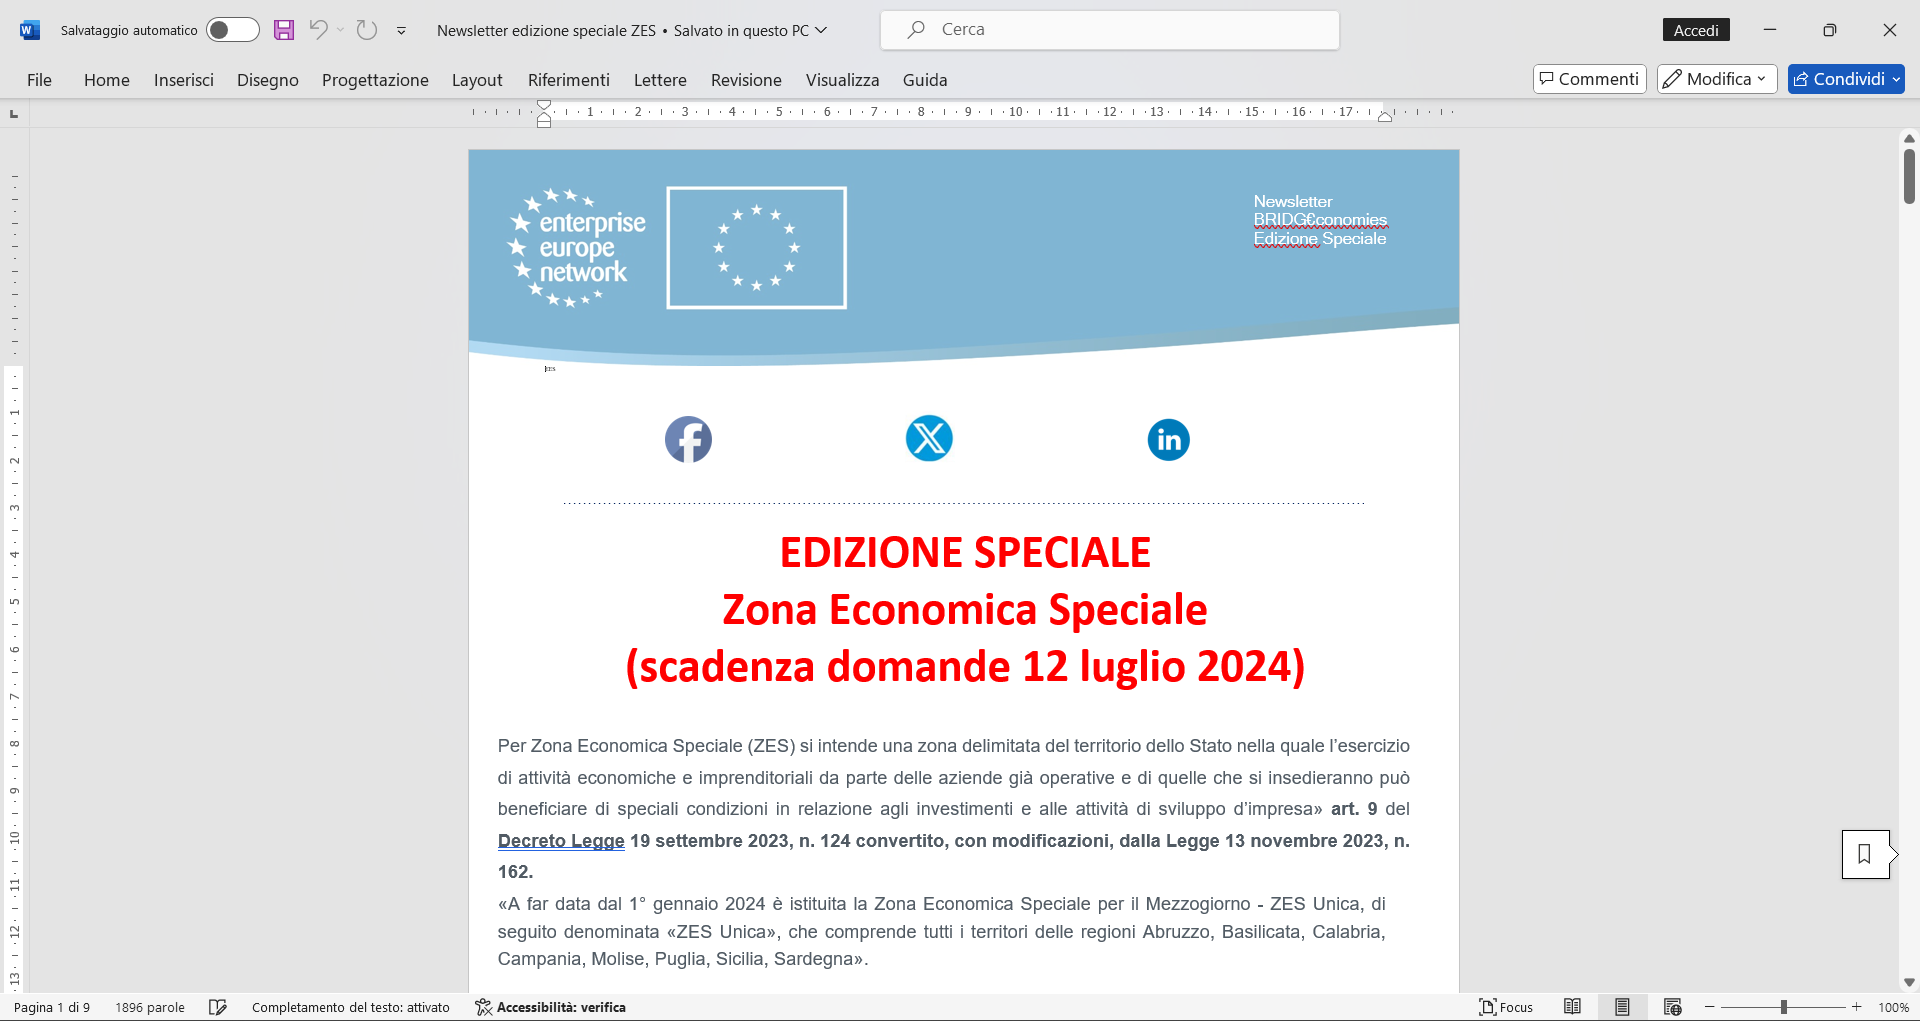 Zona Economica Speciale (scadenza domande 12 luglio 2024)